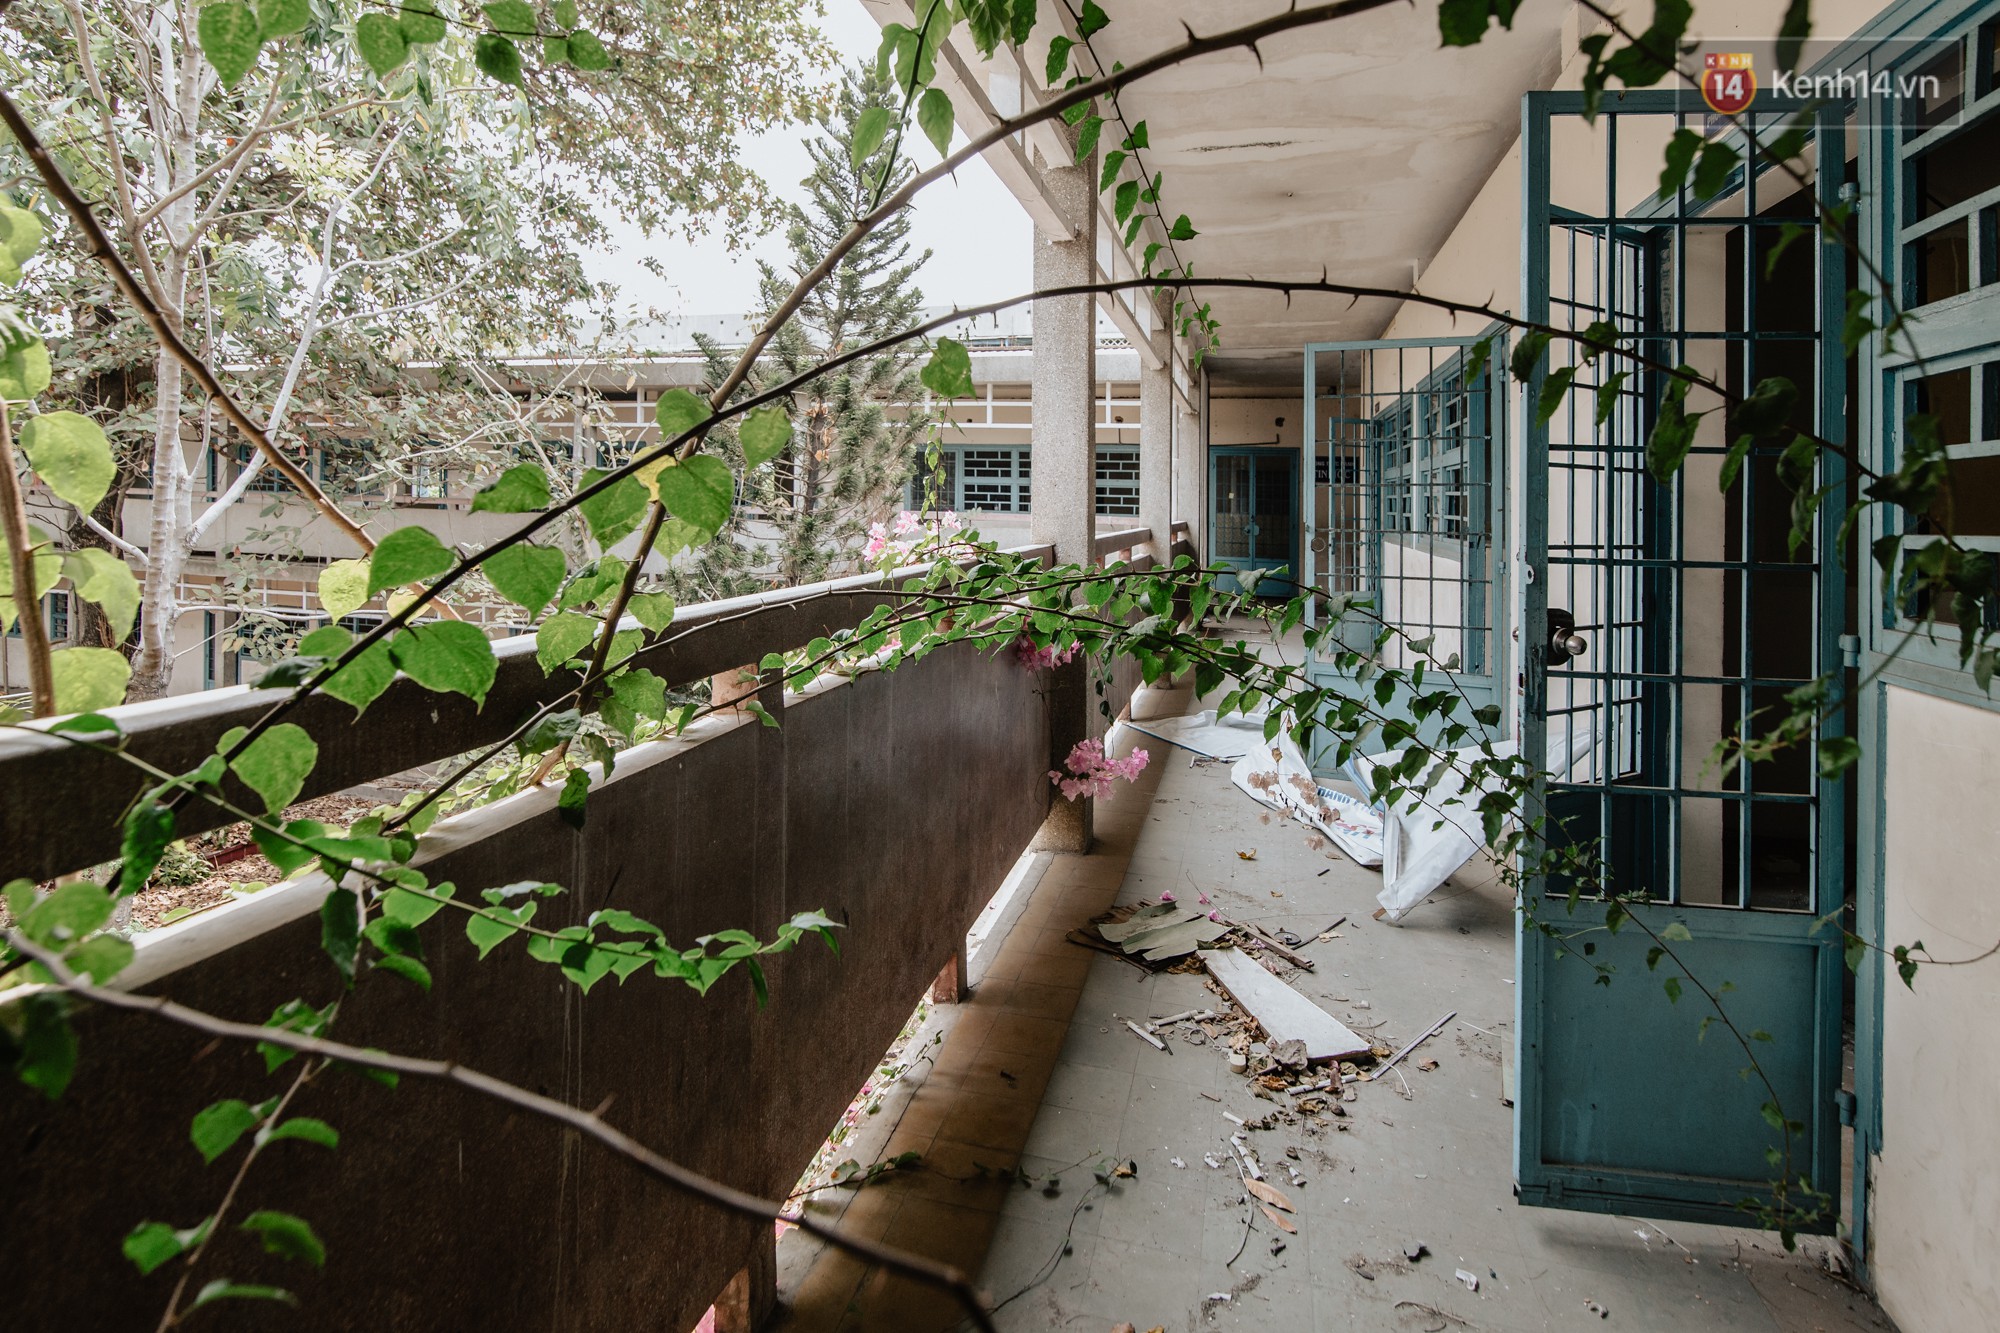 Khung cảnh rợn người bên trong trường học 40 năm tuổi bị bỏ hoang tại Sài Gòn - Ảnh 22.